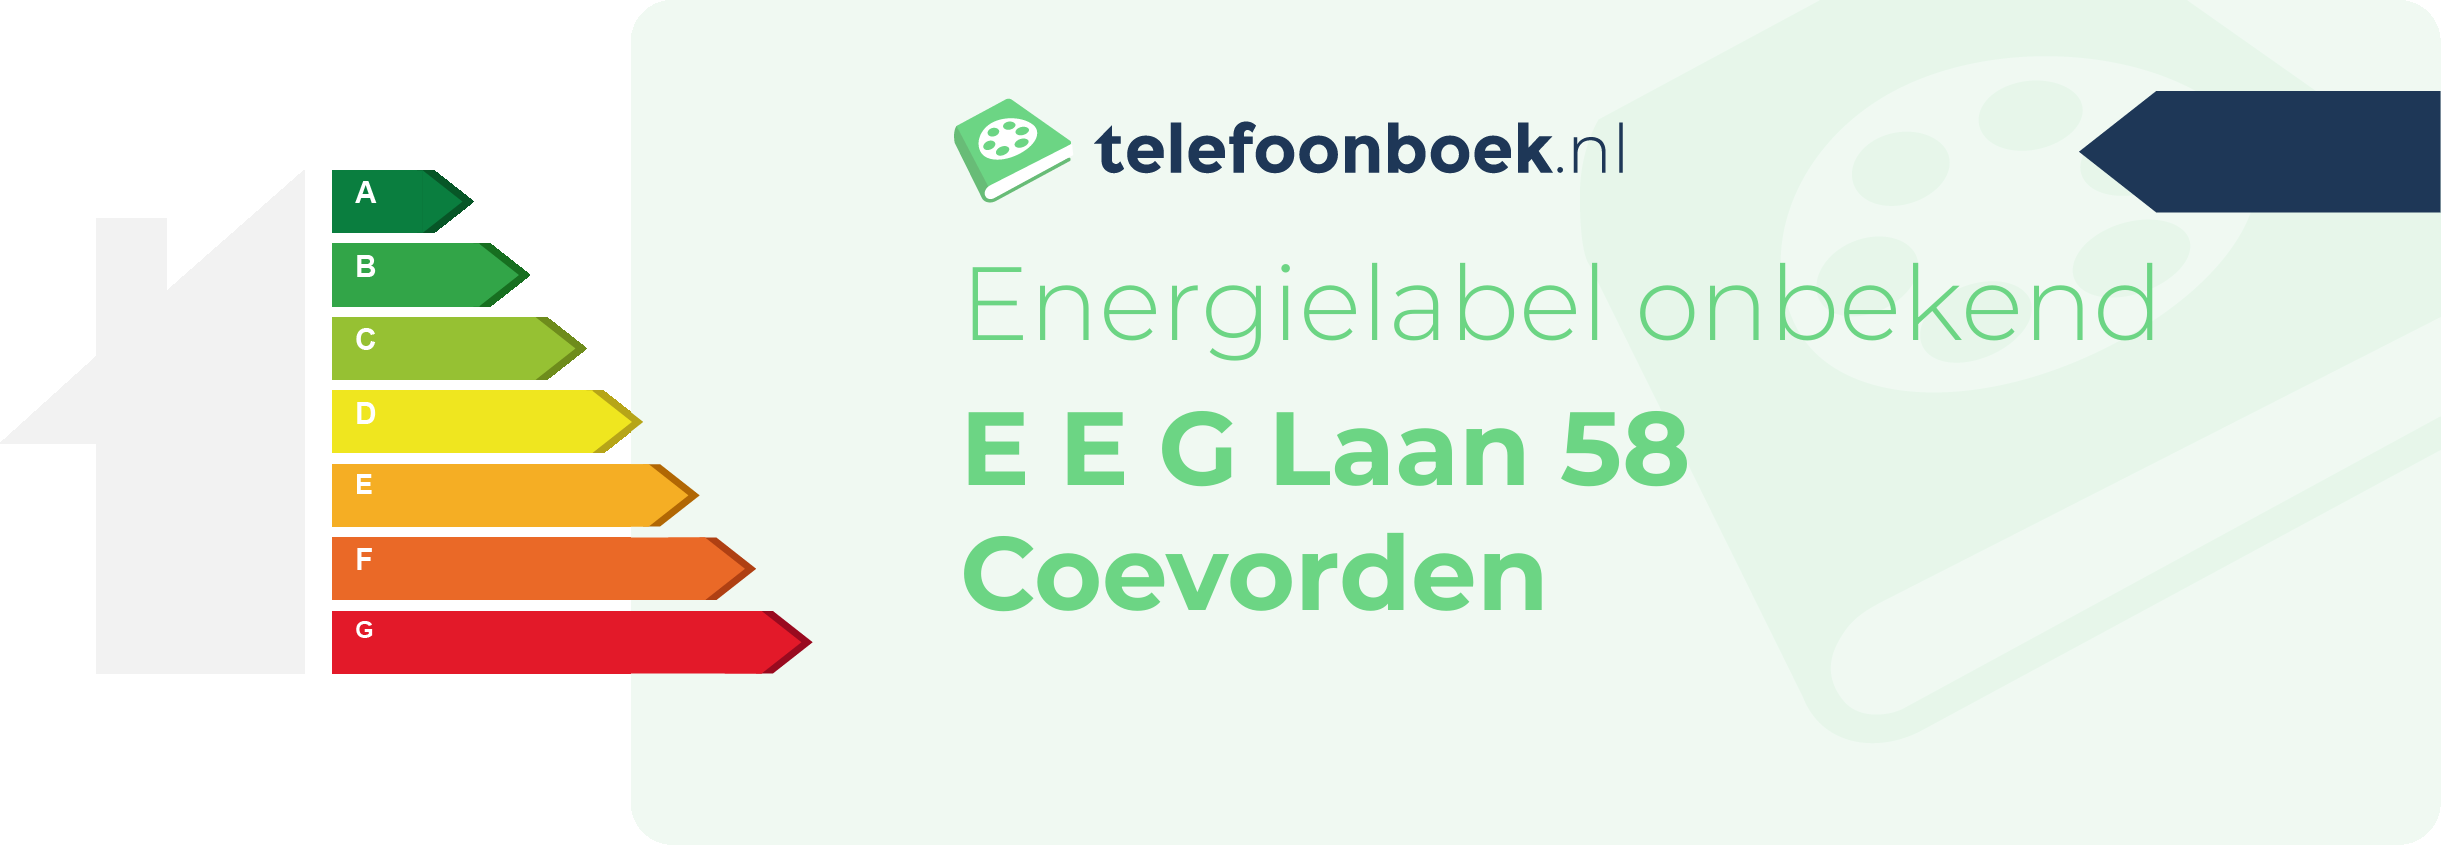 Energielabel E E G Laan 58 Coevorden